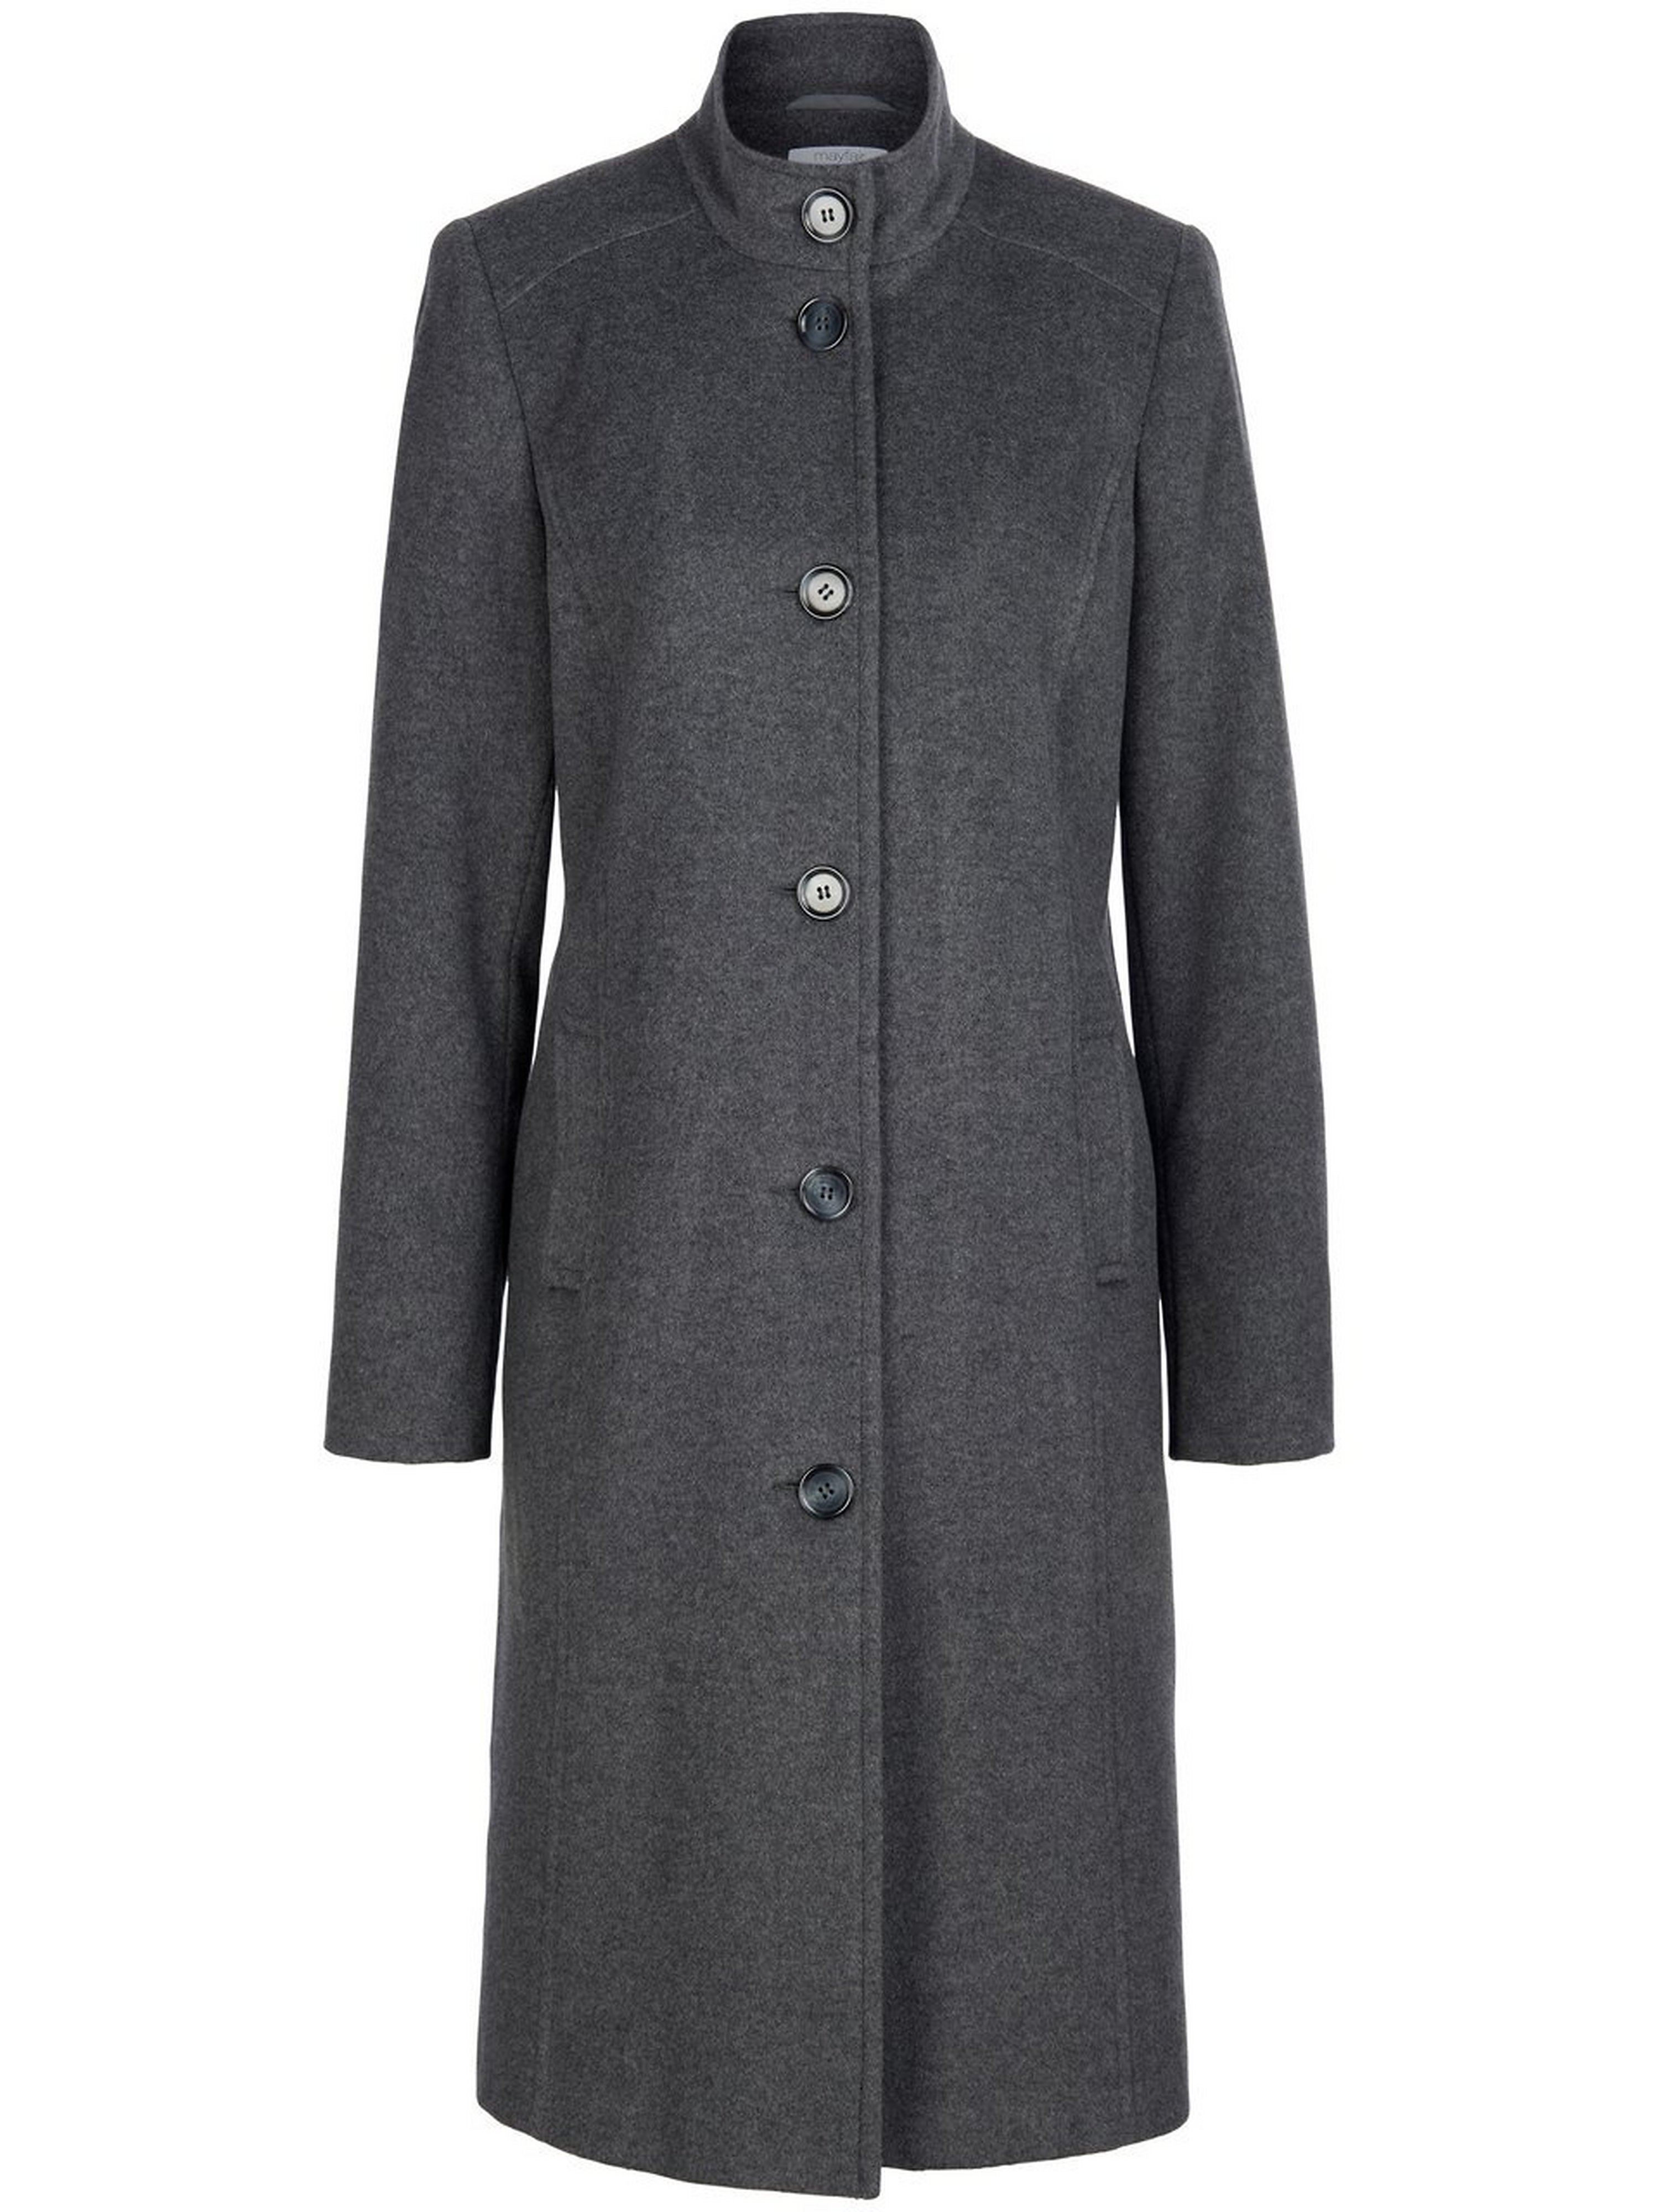 Le manteau laine haut gamme  mayfair by Peter Hahn gris taille 44